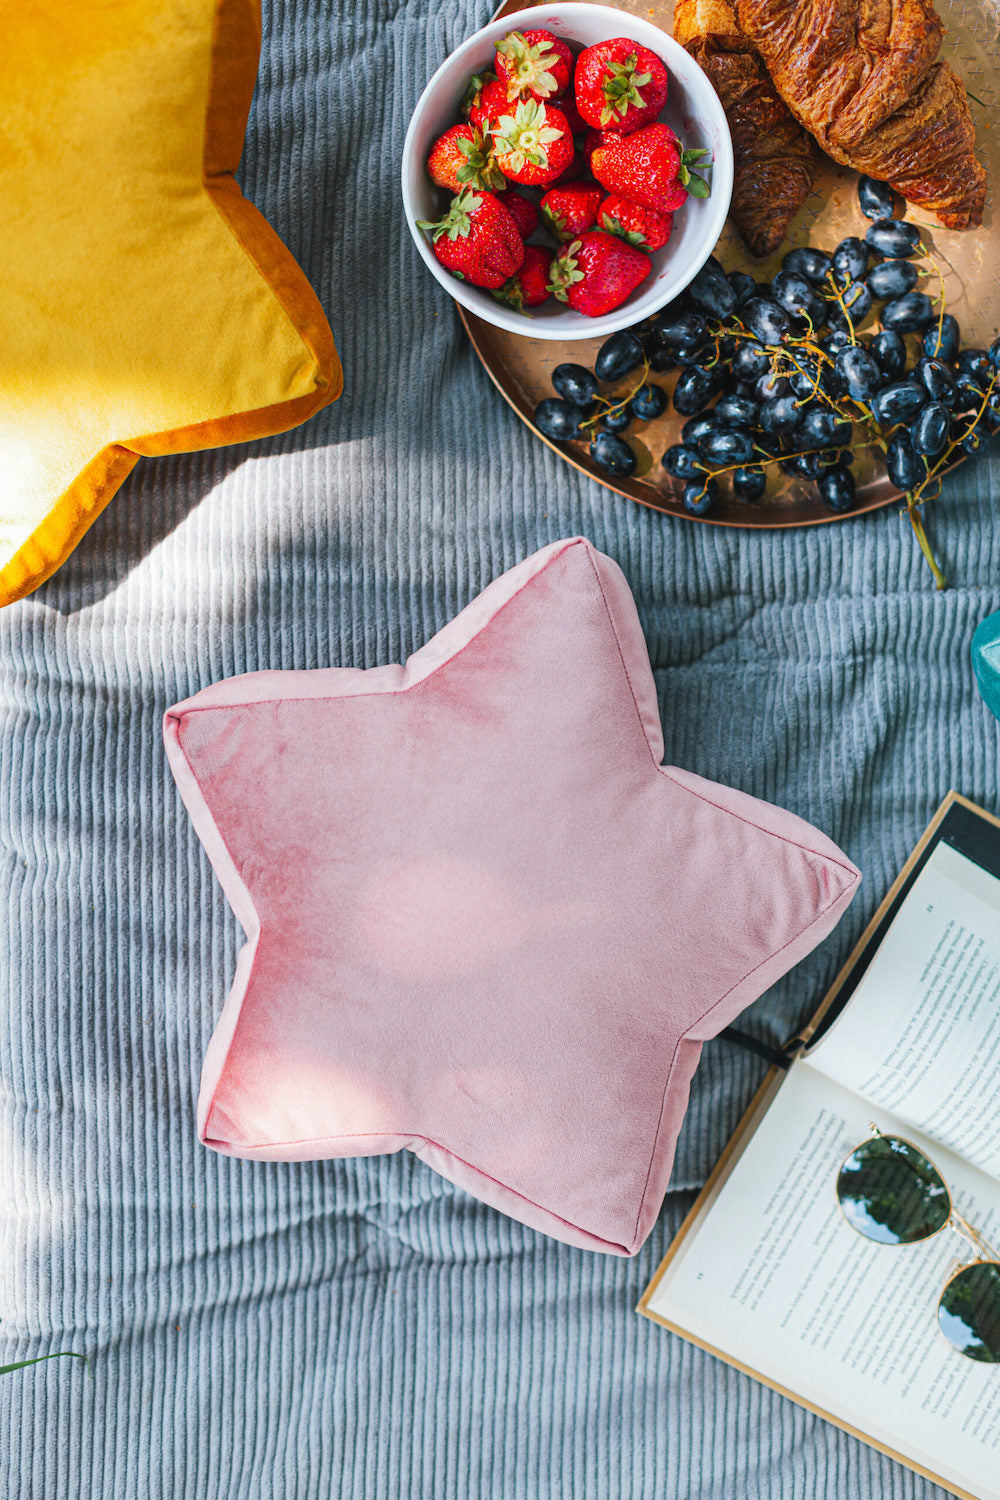 mała poduszka gwiazdka welurowa w kolorze różowym od bettys home leży obok książki i miski z truskawkami 